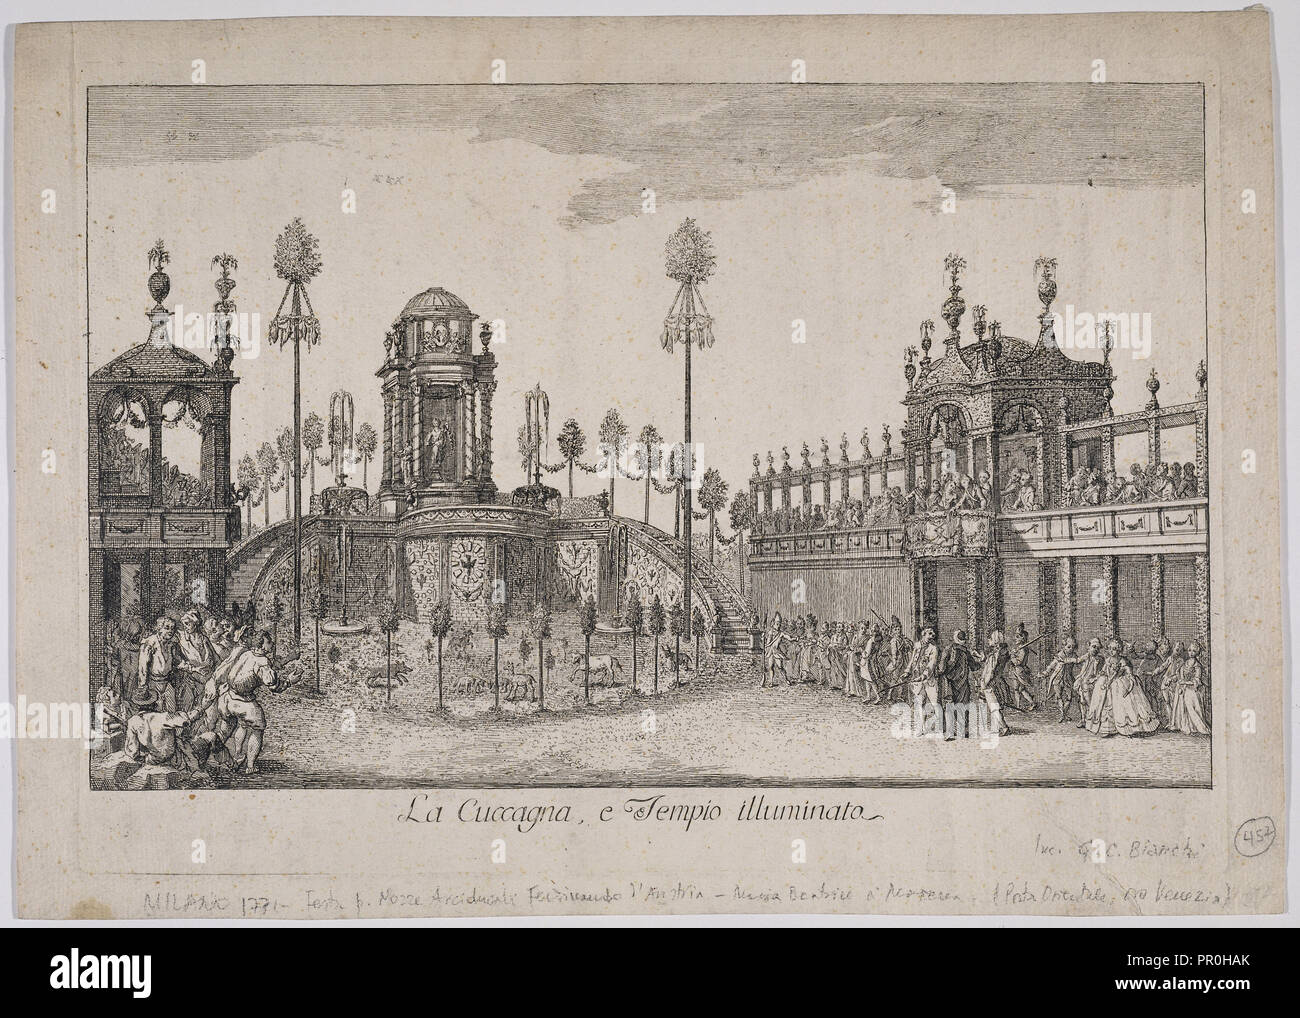 La cuccagna, e tempio illuminato, raccolta di stampe del festival, Bianchi, Giulio Cesare, fl. 1760, attacco, ca. 1771 Foto Stock